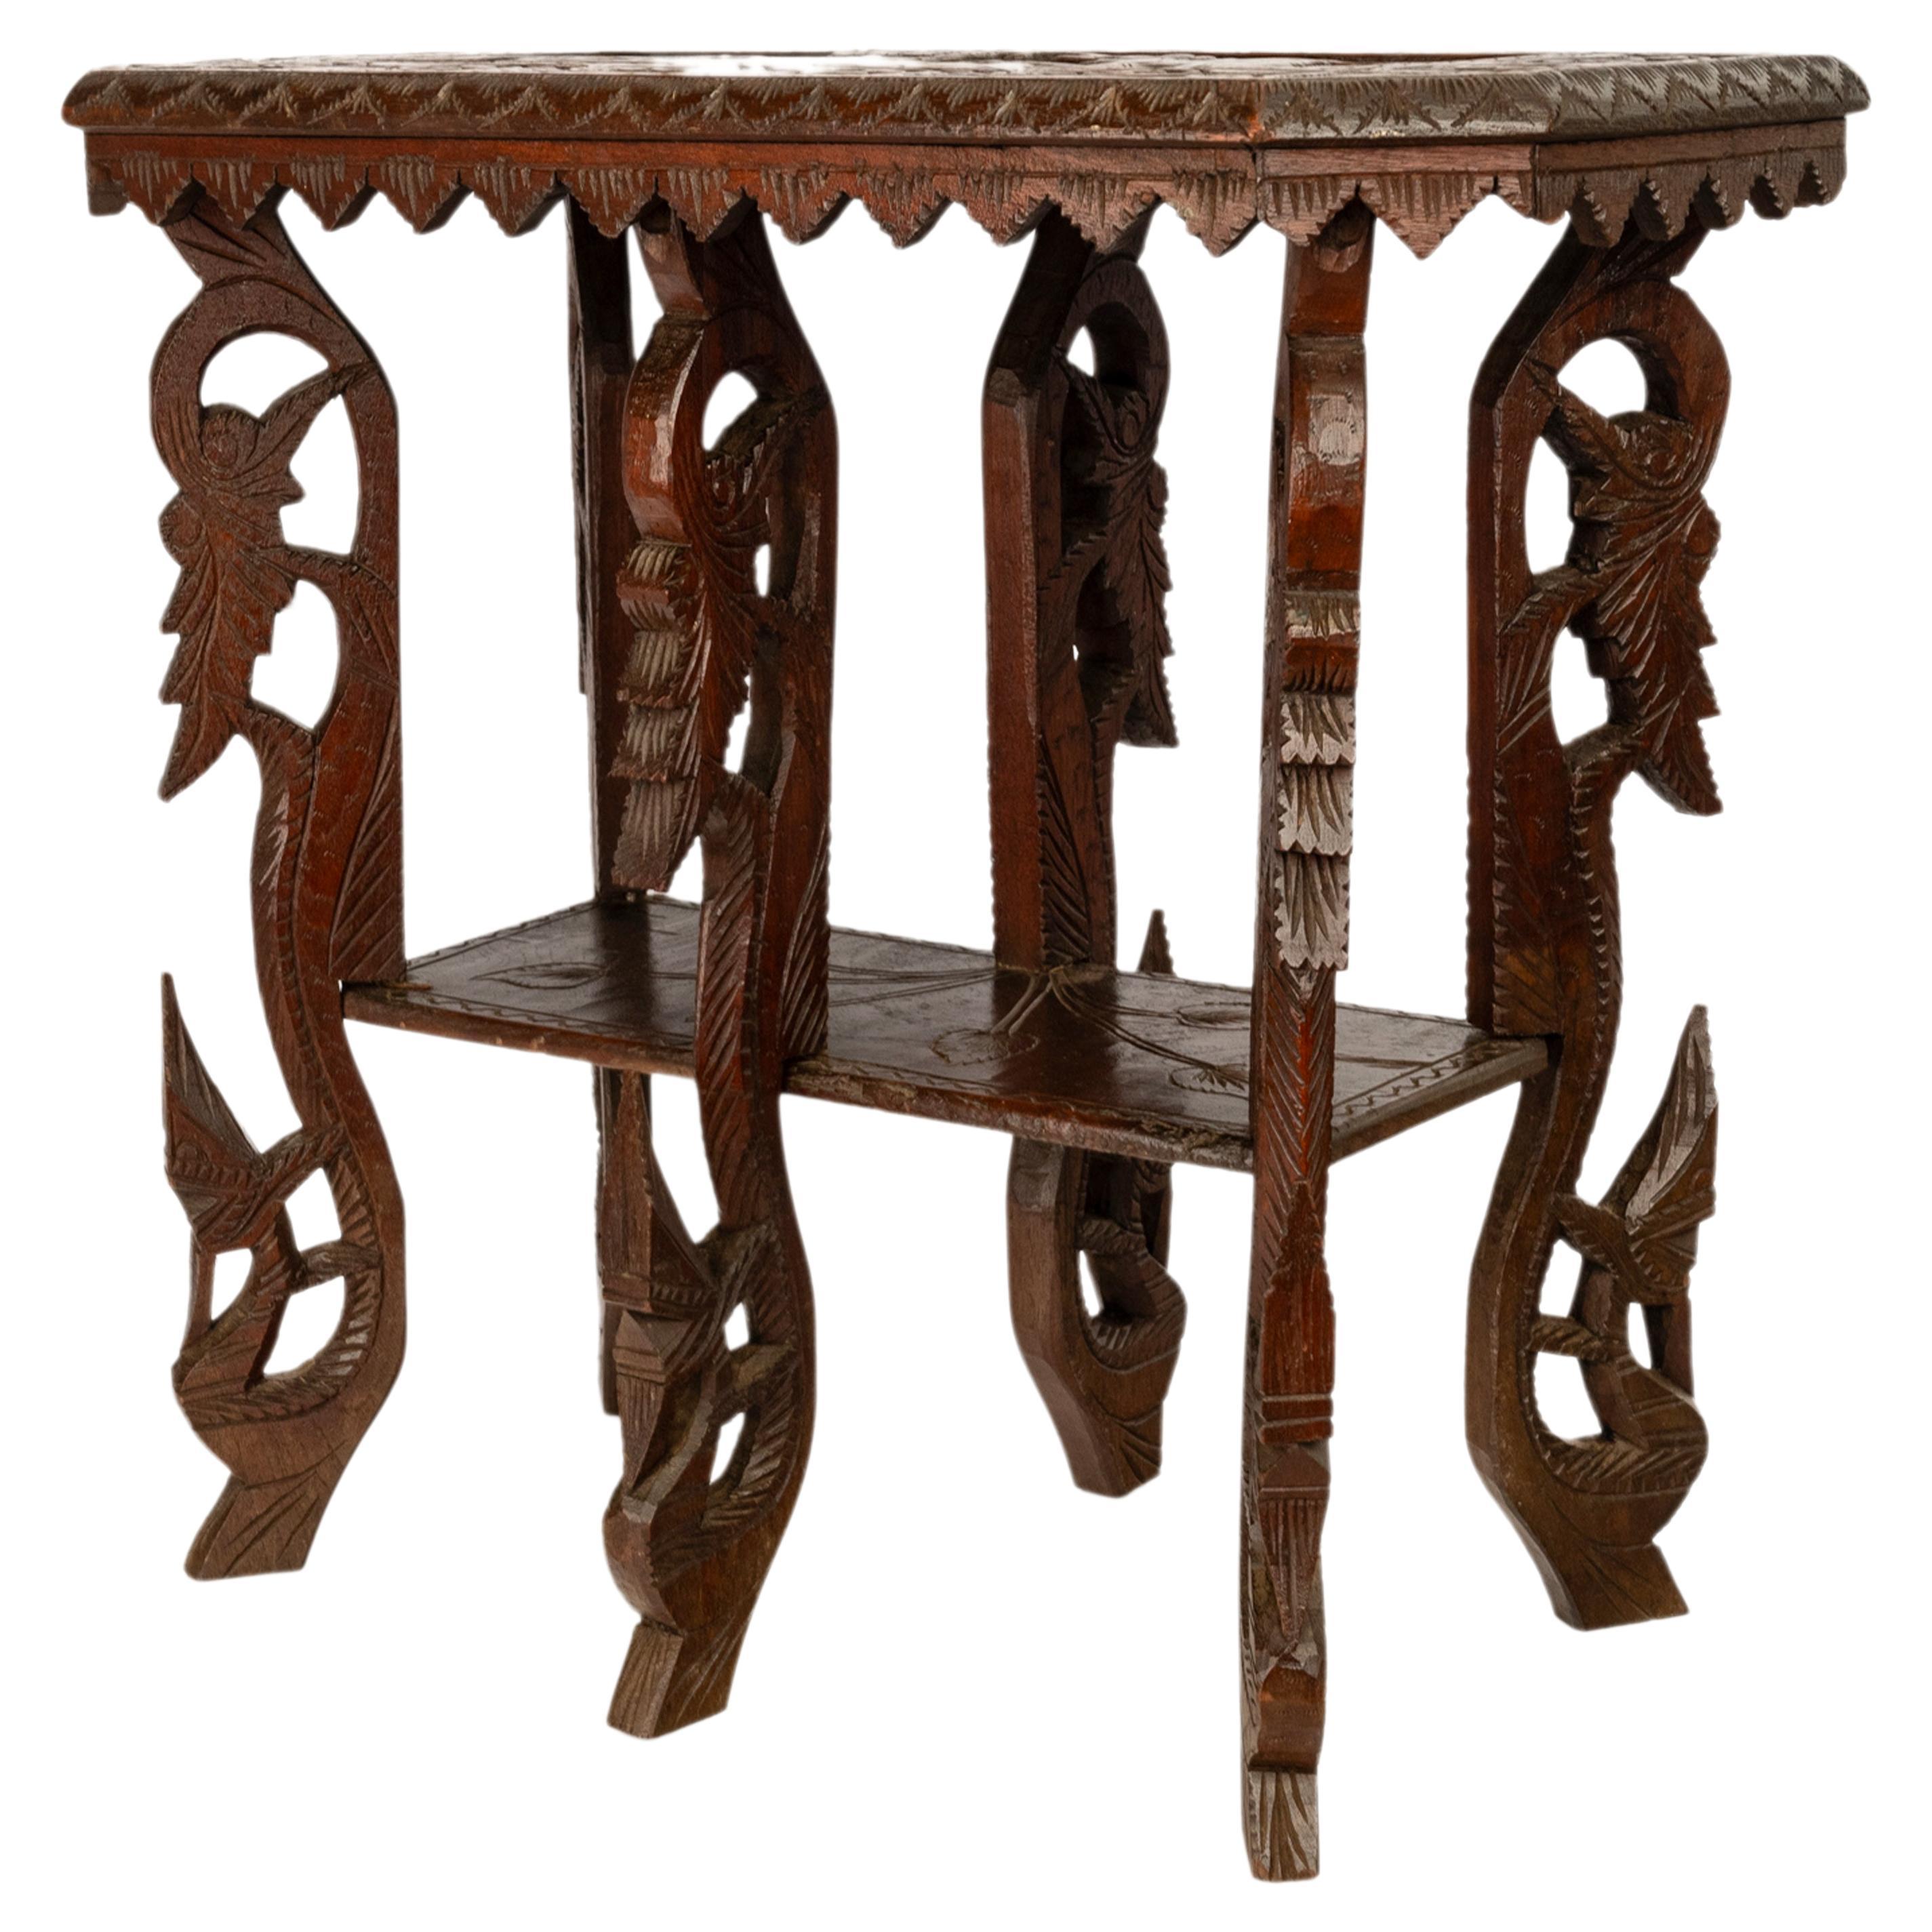 Rare et inhabituelle table d'appoint ancienne anglo-indienne sculptée, vers 1900.
La table, d'une forme rare, repose sur six pieds lourdement sculptés dans un style organique et supporte un plateau inférieur sculpté d'un motif indien en forme de